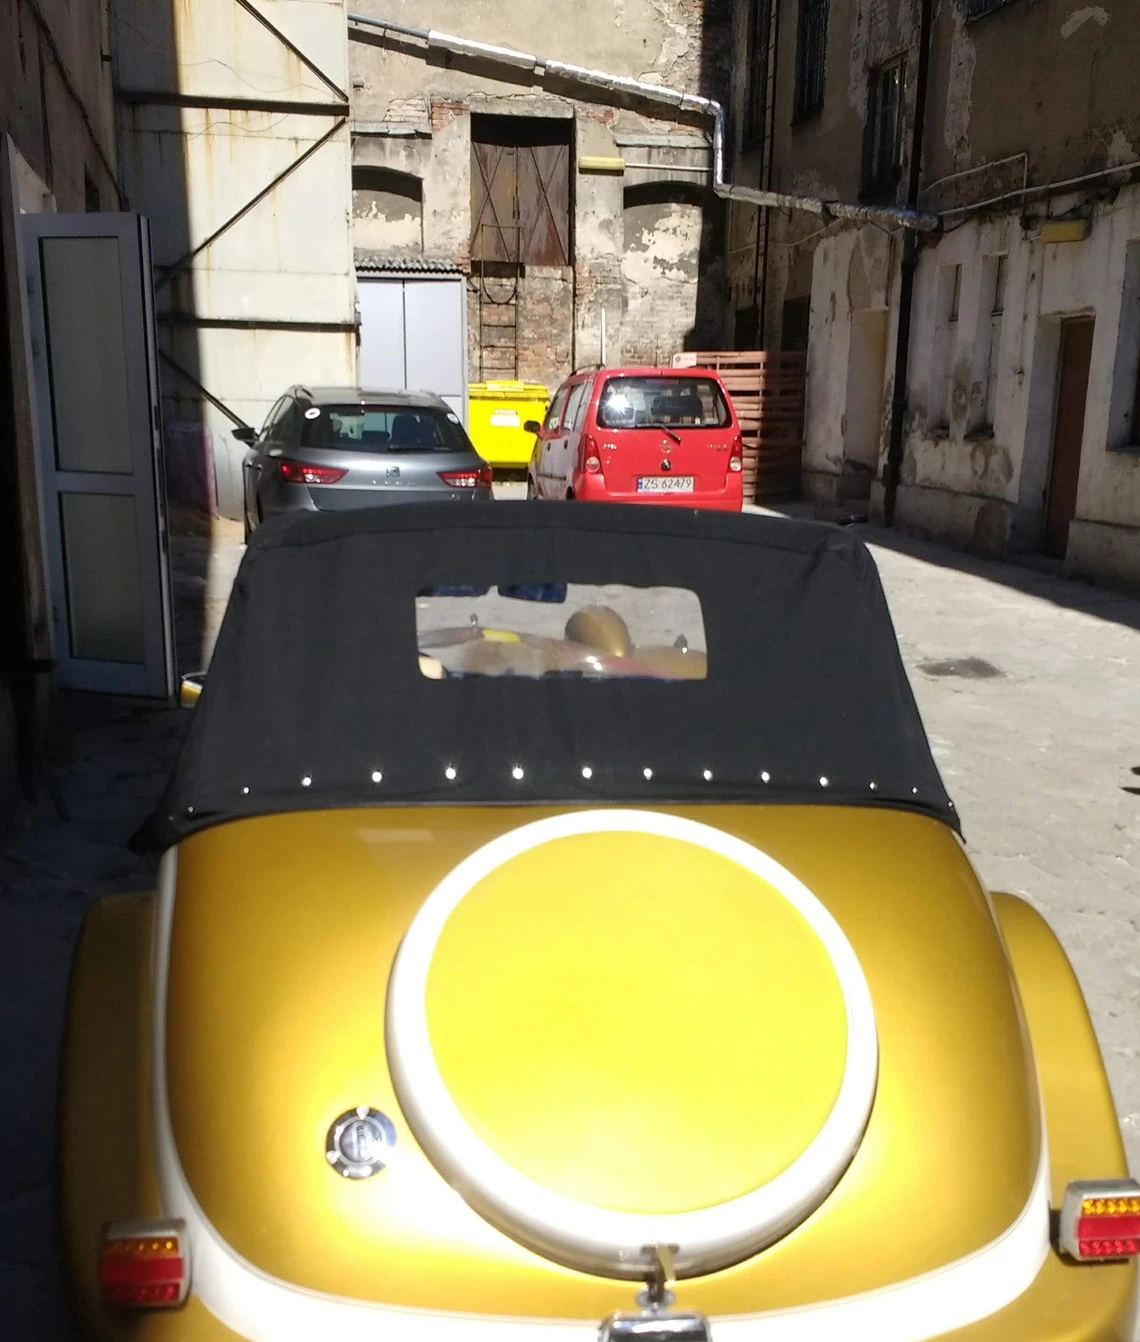 żółty samochód przykryty plandeką